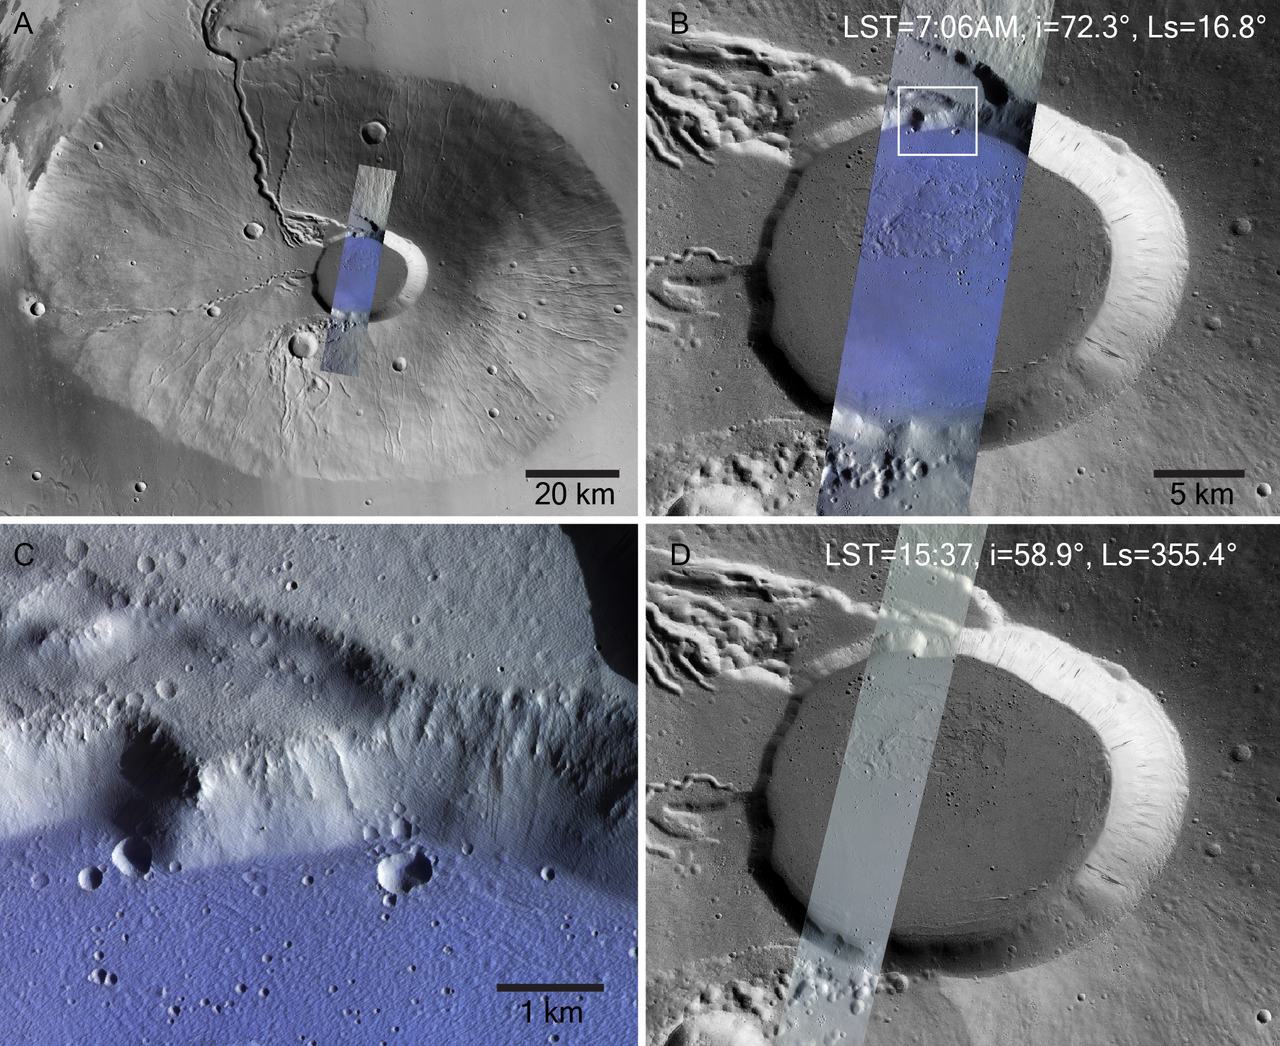 Brina sul fondo della caldera del vulcano Seraonios Tholos.  (a) Ceraunius Tholus catturato dalla Context Camera del Mars Reconnaissance Orbiter (NASA), con le osservazioni mattutine di CaSSIS sovrapposte nel rettangolo blu.  Questa immagine è vicina all'immagine (B).  Il rettangolo bianco, che delinea un'immagine più ingrandita, è mostrato nell'immagine (C).  L'immagine (D) mostra un'immagine CaSSIS della stessa area acquisita in un altro momento della giornata, quando non c'è gelo.  Le aree congelate sono mostrate in blu. [ESA/TGO/CaSSIS CC-BY-SA 3.0 IGO - ESA/DLR/FU Berlin]